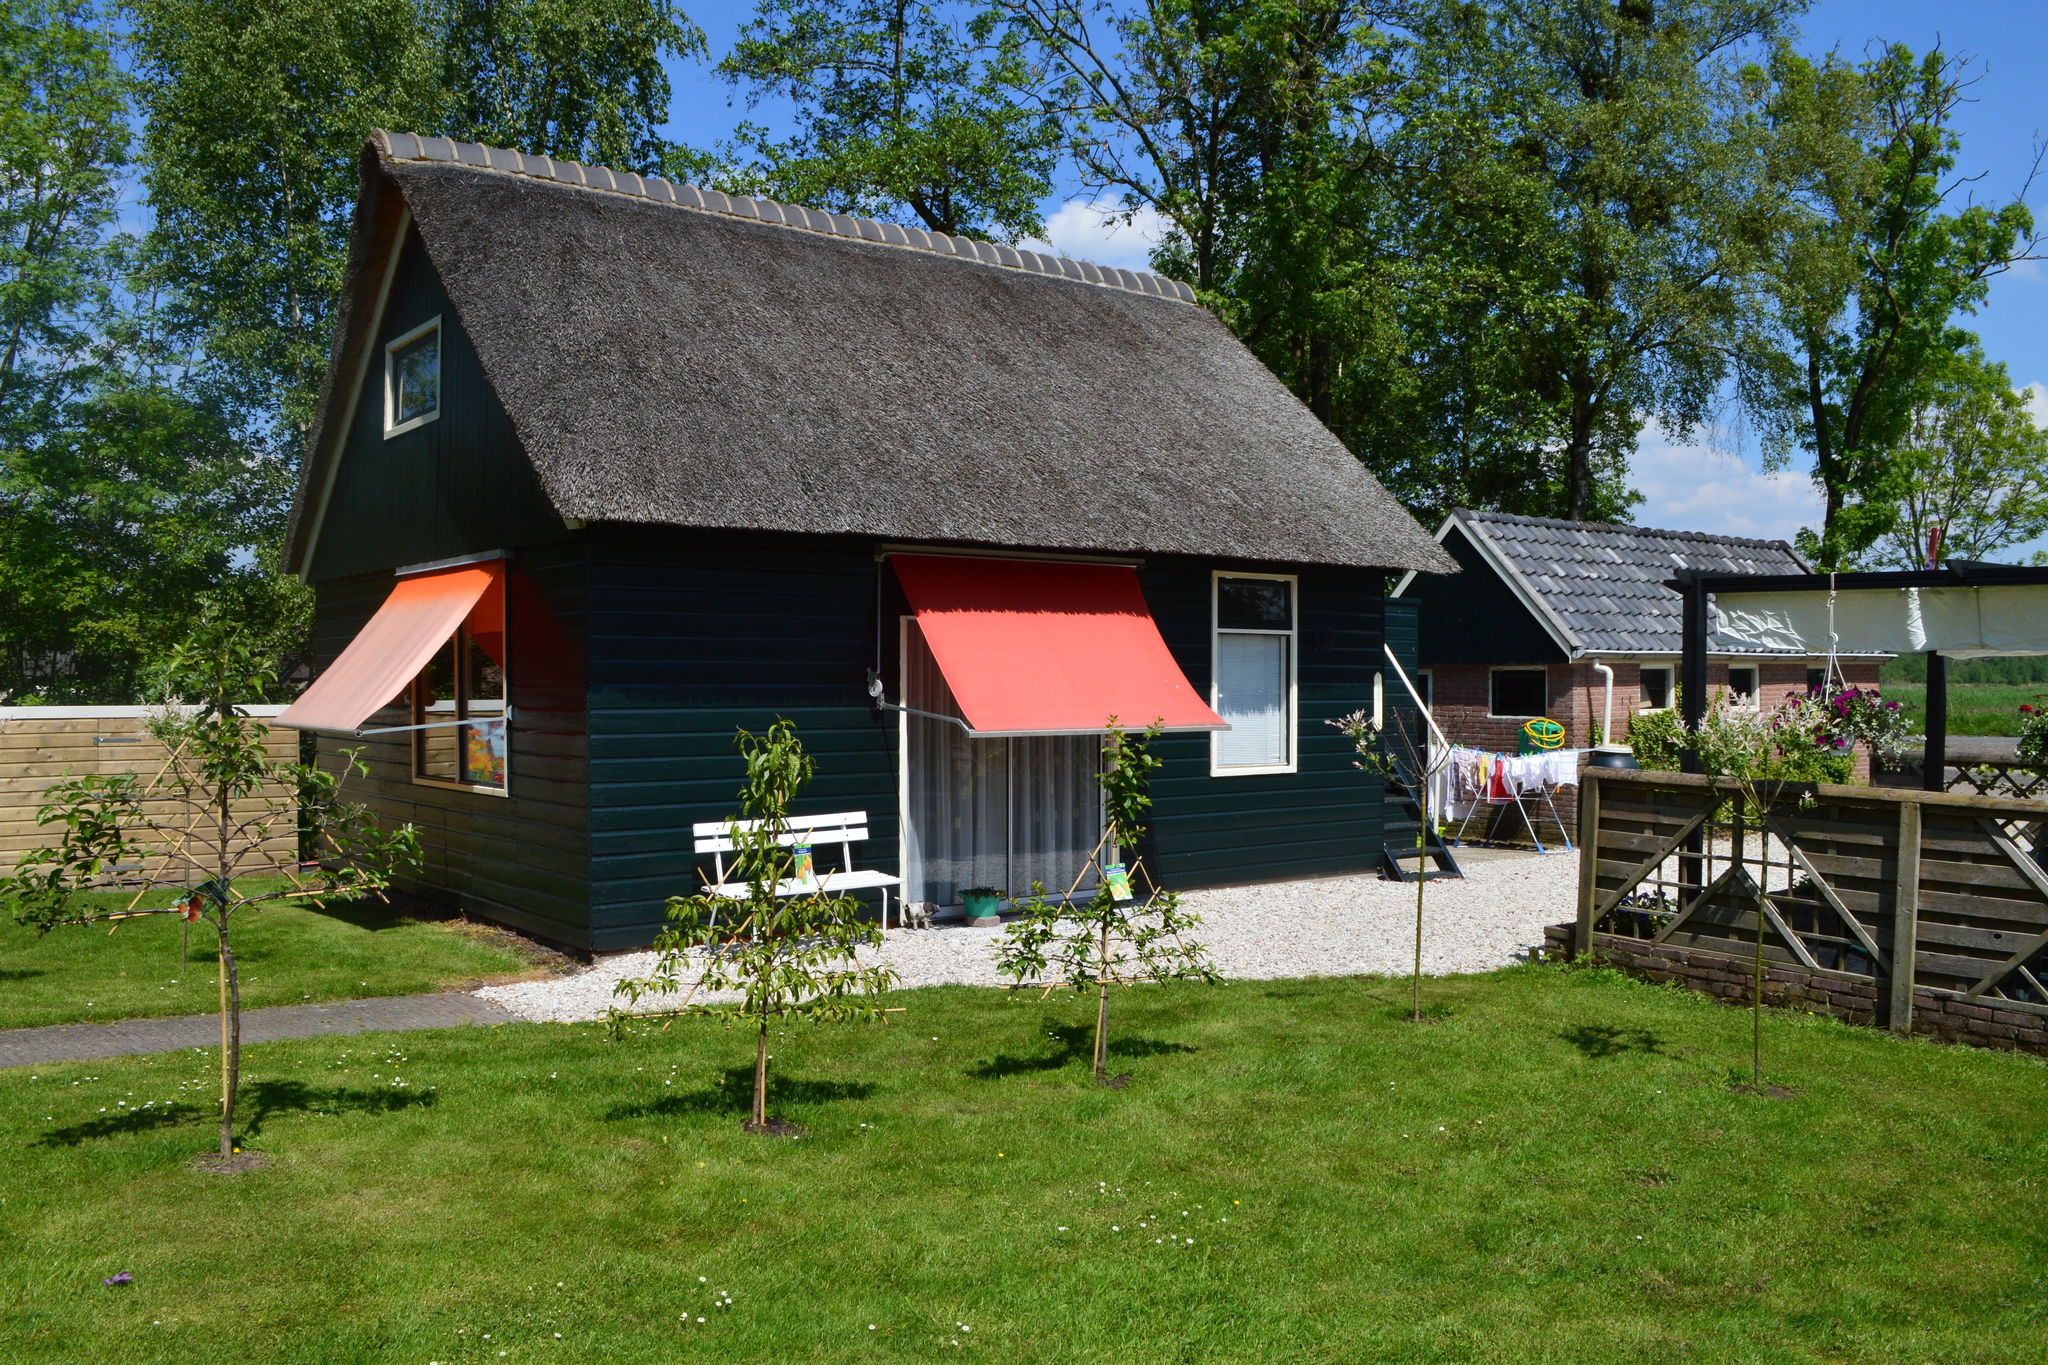 Knus huisje nabij Giethoorn en Nationaal Park Weerribben-Wieden met boot te huur